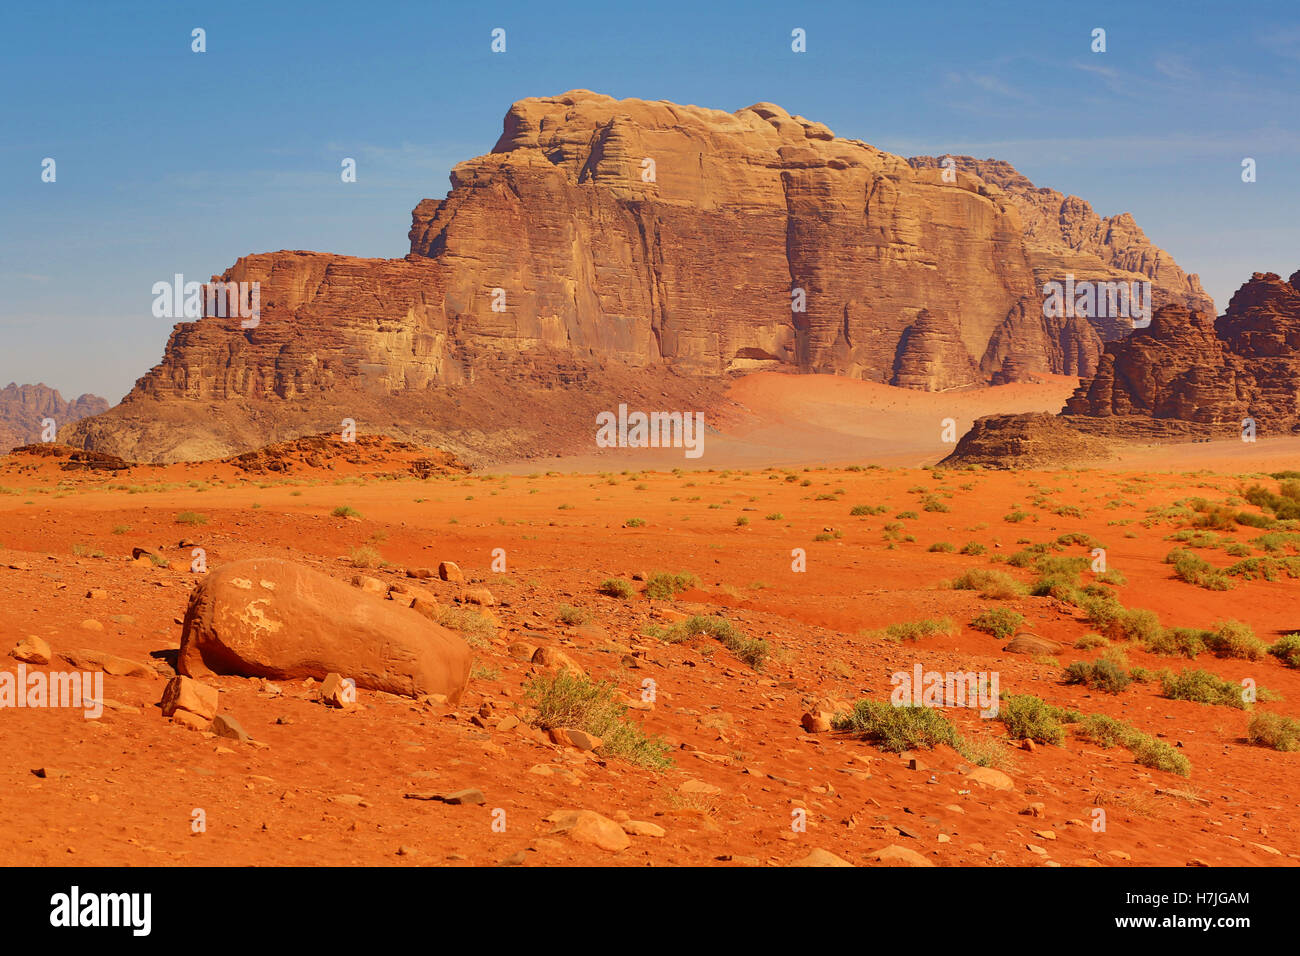 Rock formations in the desert at Wadi Rum, Jordan Stock Photo